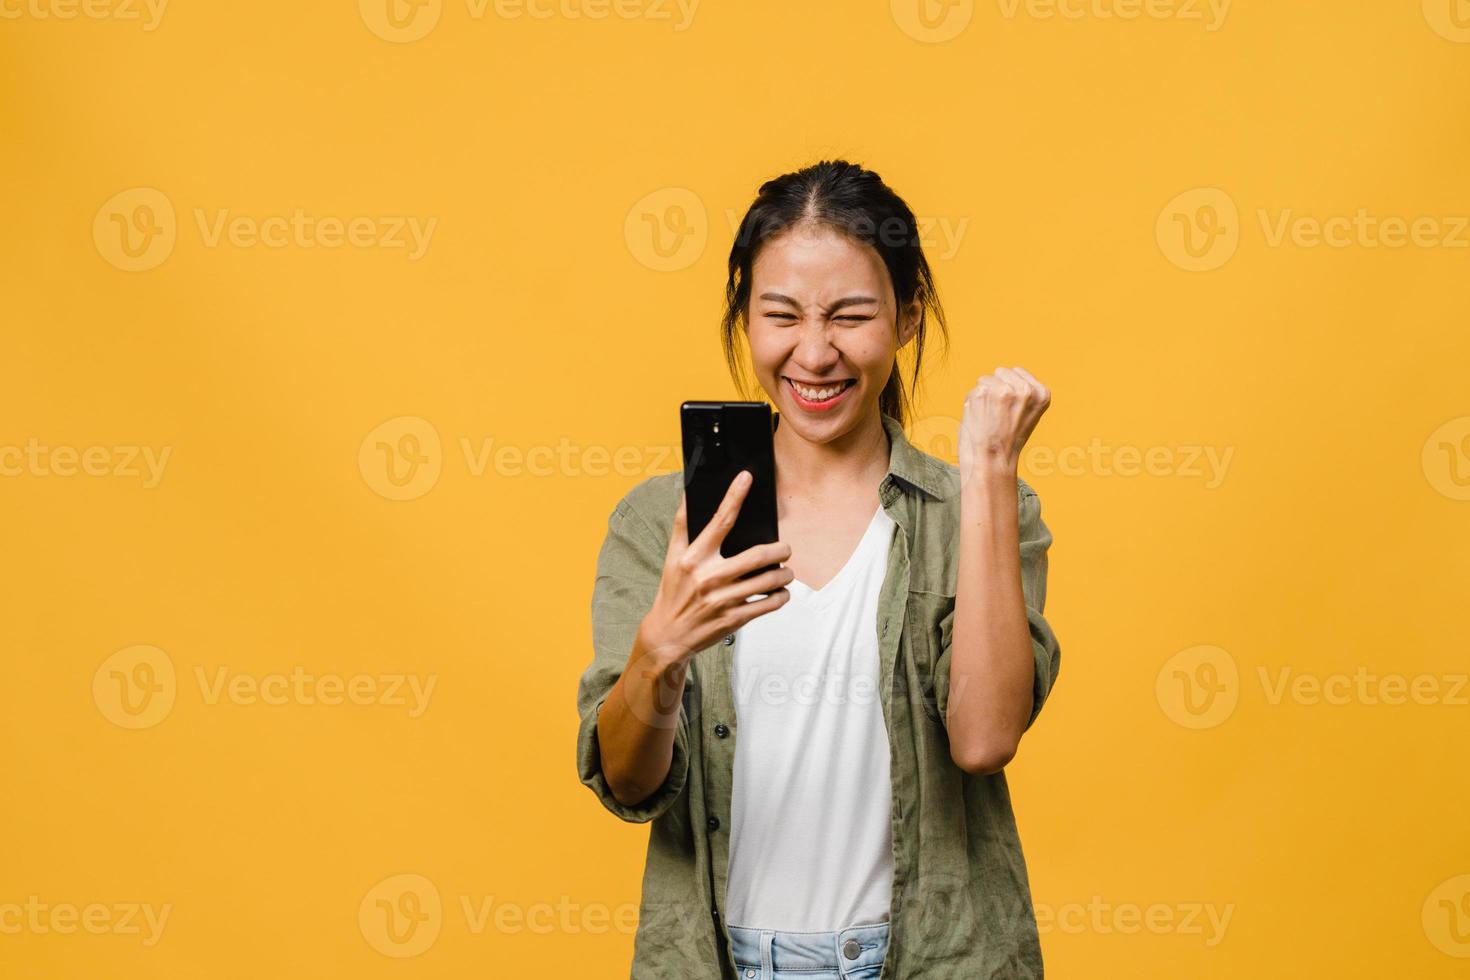 verraste jonge aziatische dame met behulp van mobiele telefoon met positieve uitdrukking, glimlacht breed, gekleed in casual kleding en staat geïsoleerd op gele achtergrond. gelukkige schattige blije vrouw verheugt zich over succes. foto